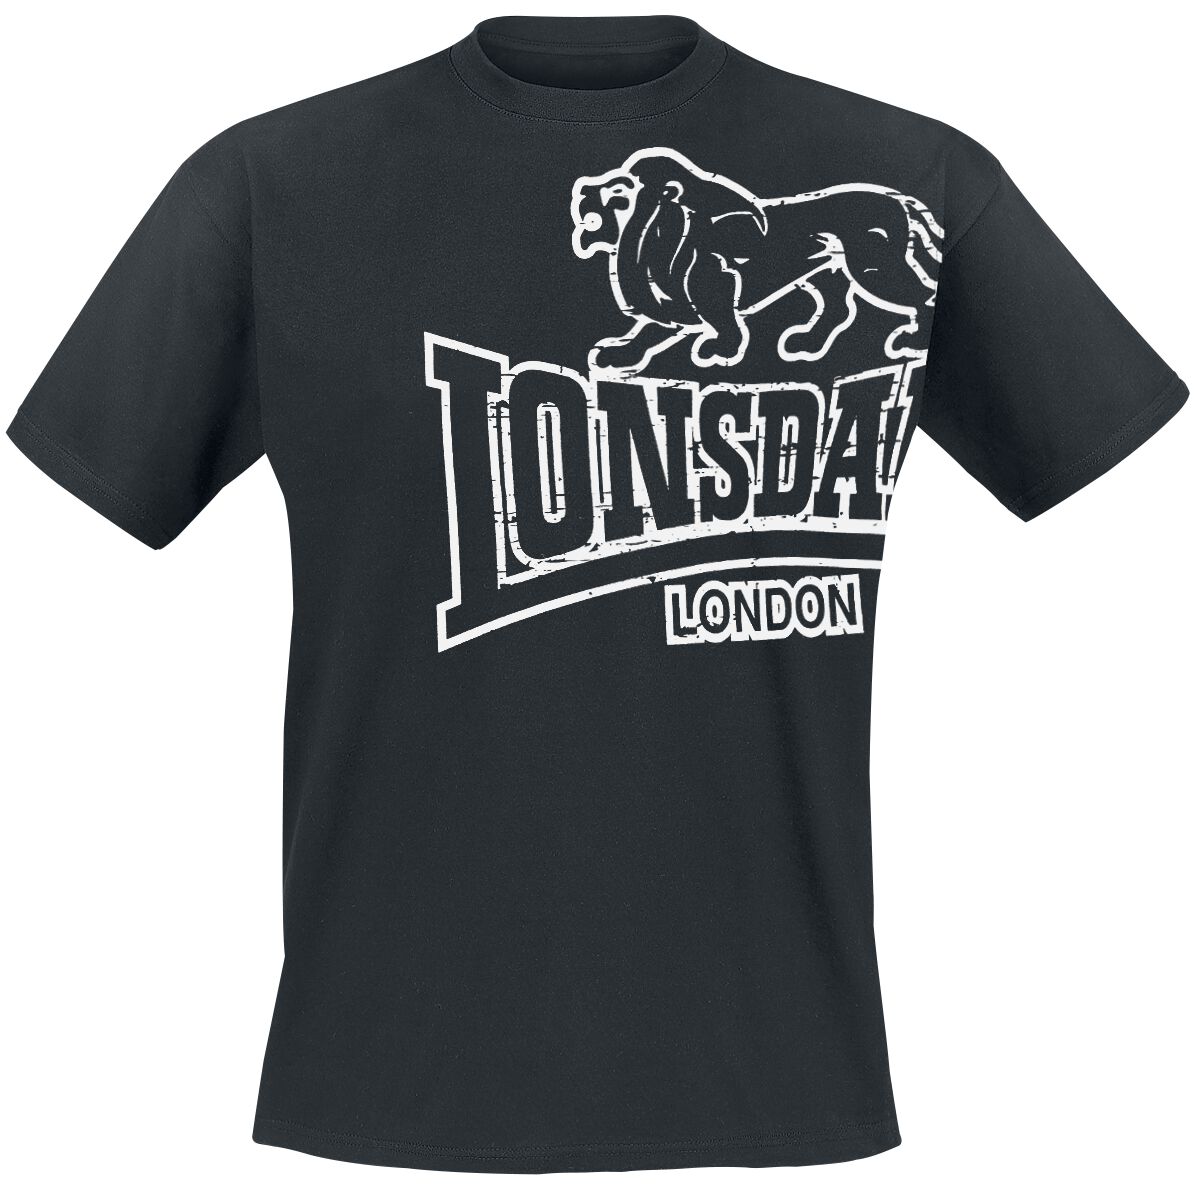 Lonsdale London T-Shirt - Langsett - M bis 5XL - für Männer - Größe XXL - schwarz